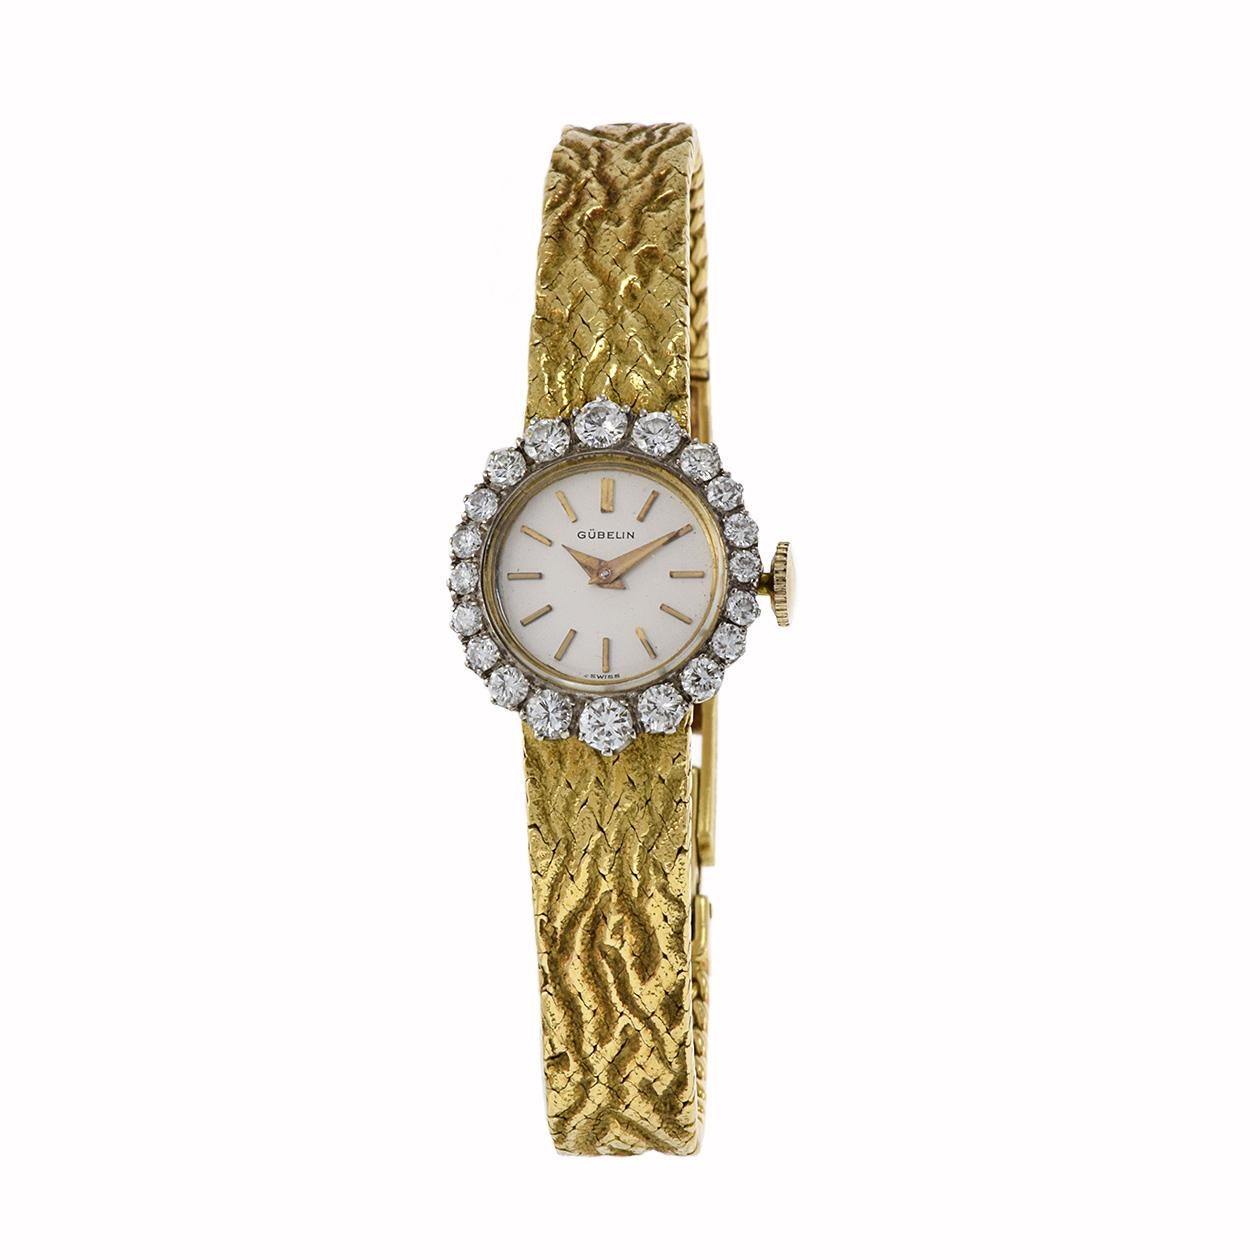 Voici la captivante montre bracelet à lunette de diamants Gubelin 1960, une incarnation étonnante du luxe et de la sophistication. Réalisé avec une attention méticuleuse aux détails, ce garde-temps est doté d'un boîtier et d'un bracelet en or 18